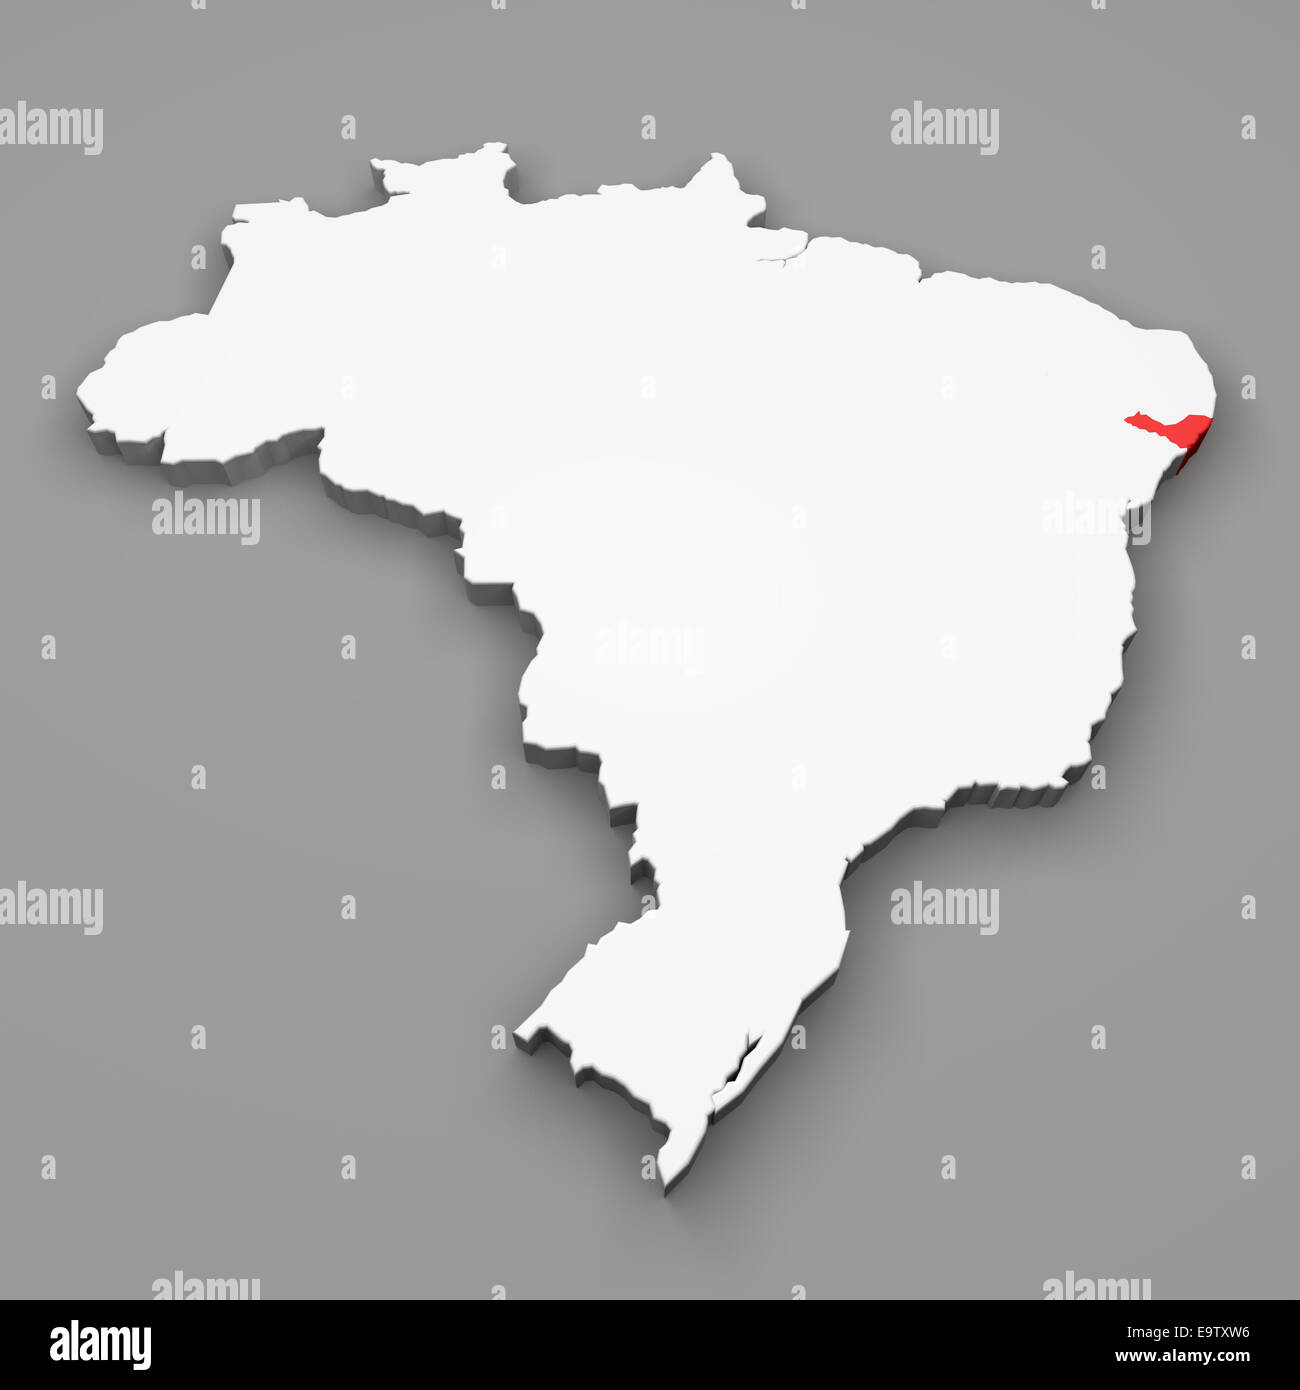 L'état d'Alagoas sur carte du Brésil sur fond gris Banque D'Images